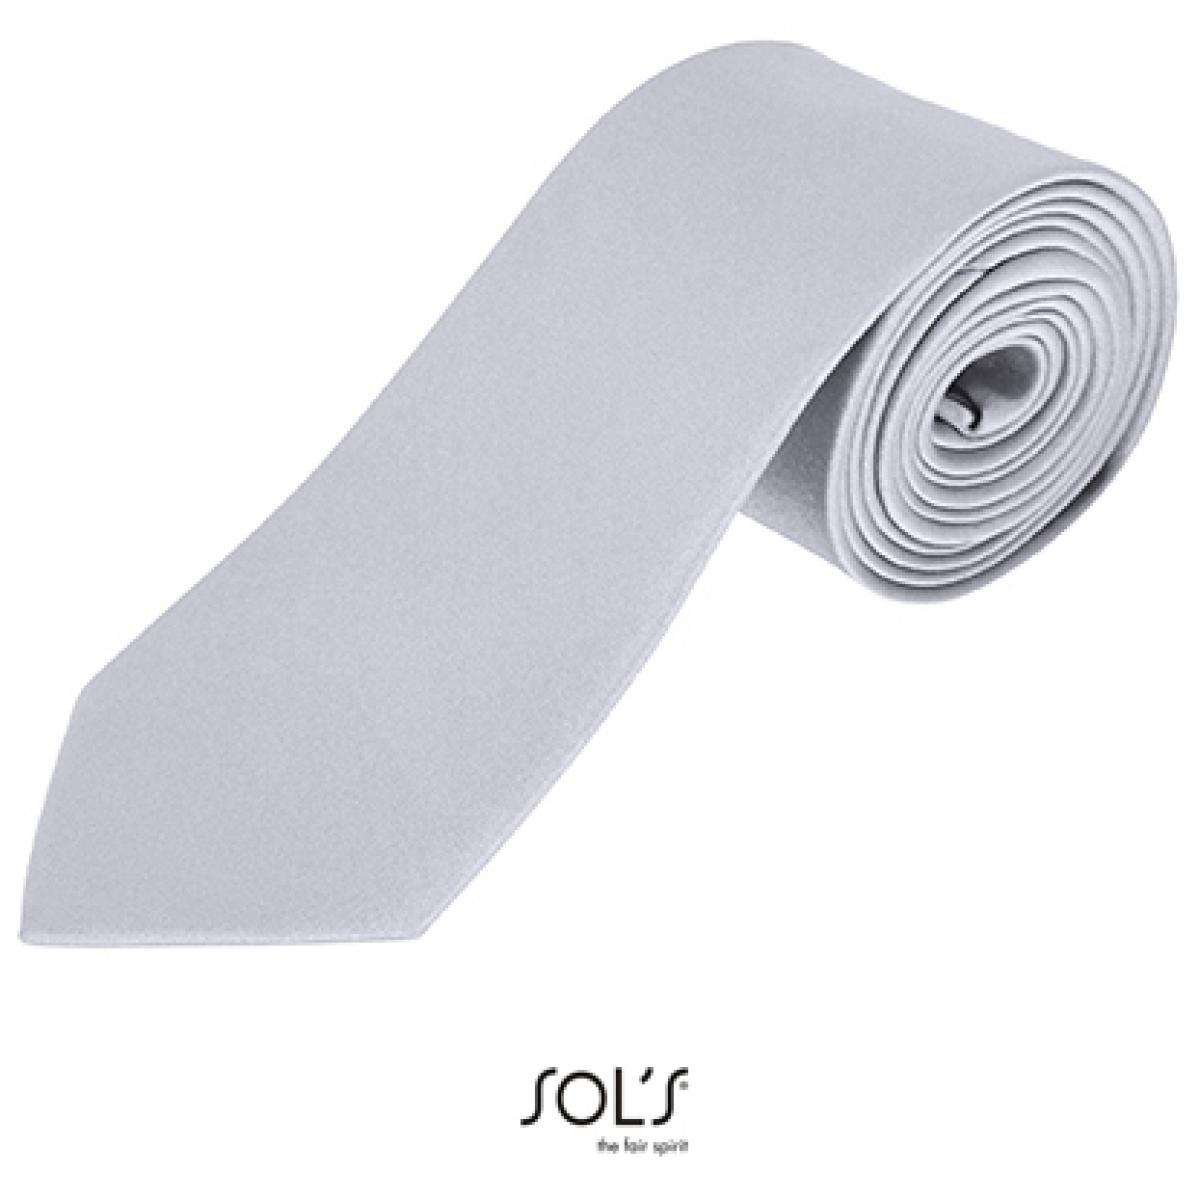 Hersteller: SOLs Herstellernummer: 02932 Artikelbezeichnung: Herren Krawatte Garner Tie - Länge: 150 cm, Breite: 7 cm" Farbe: Silver